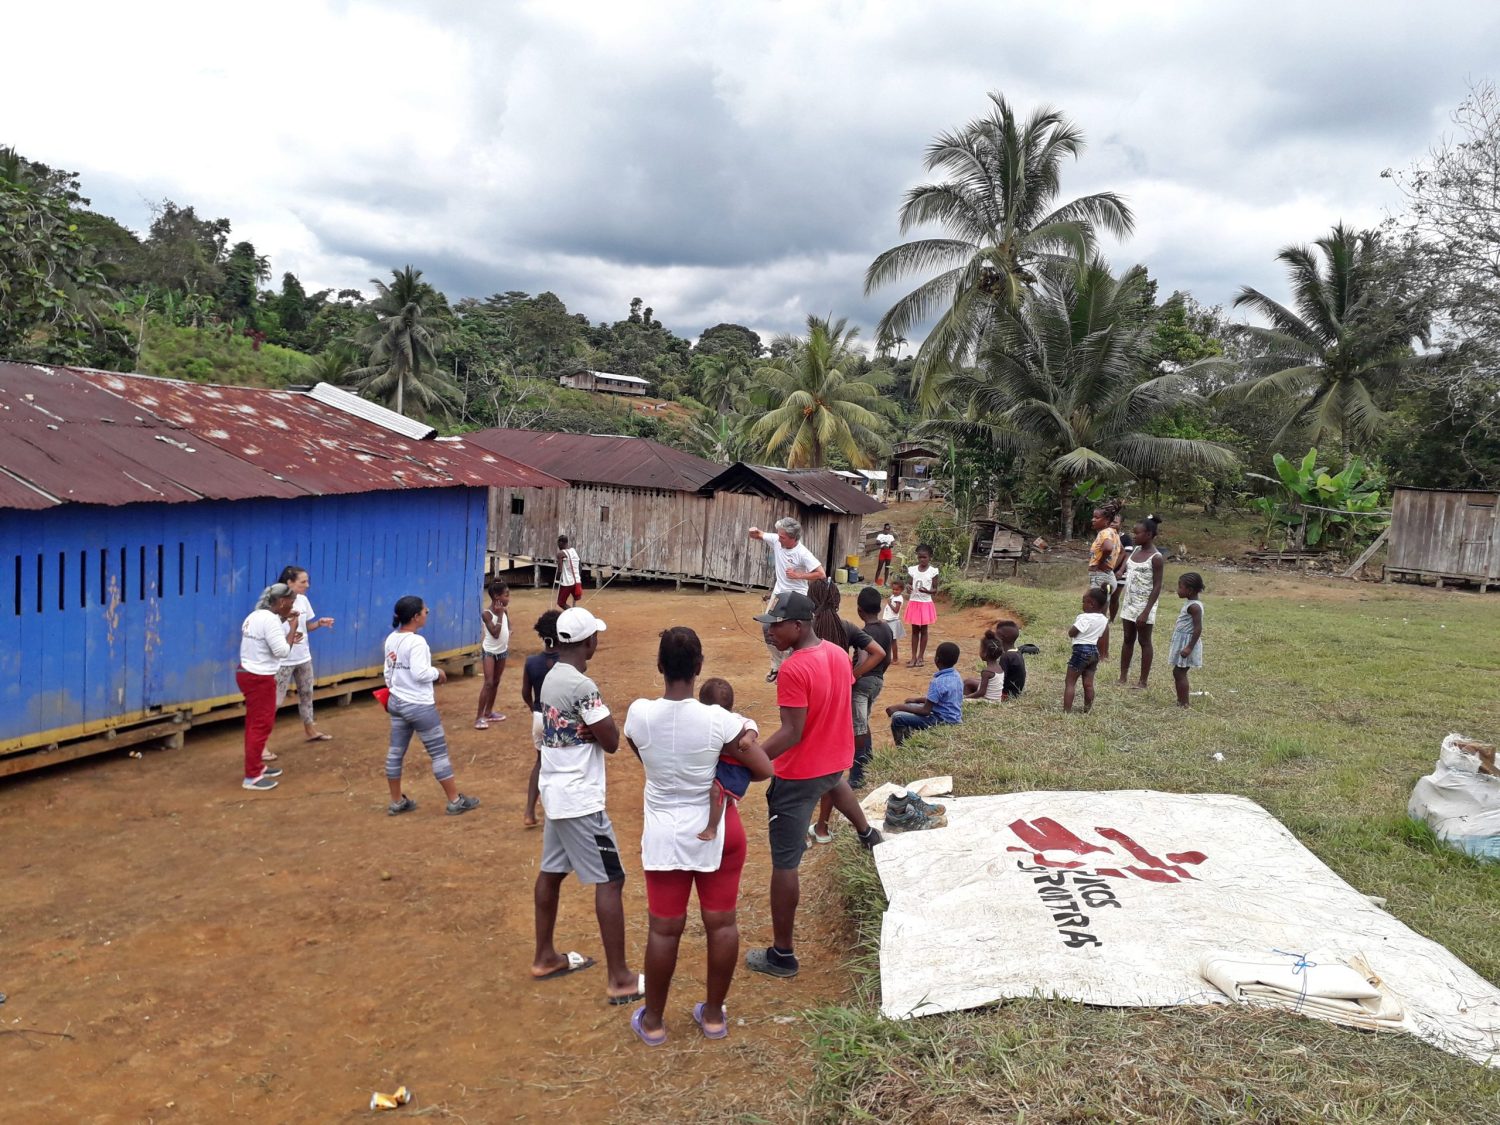 La comunidad de la vereda Espumero, en Colombia.MSF.